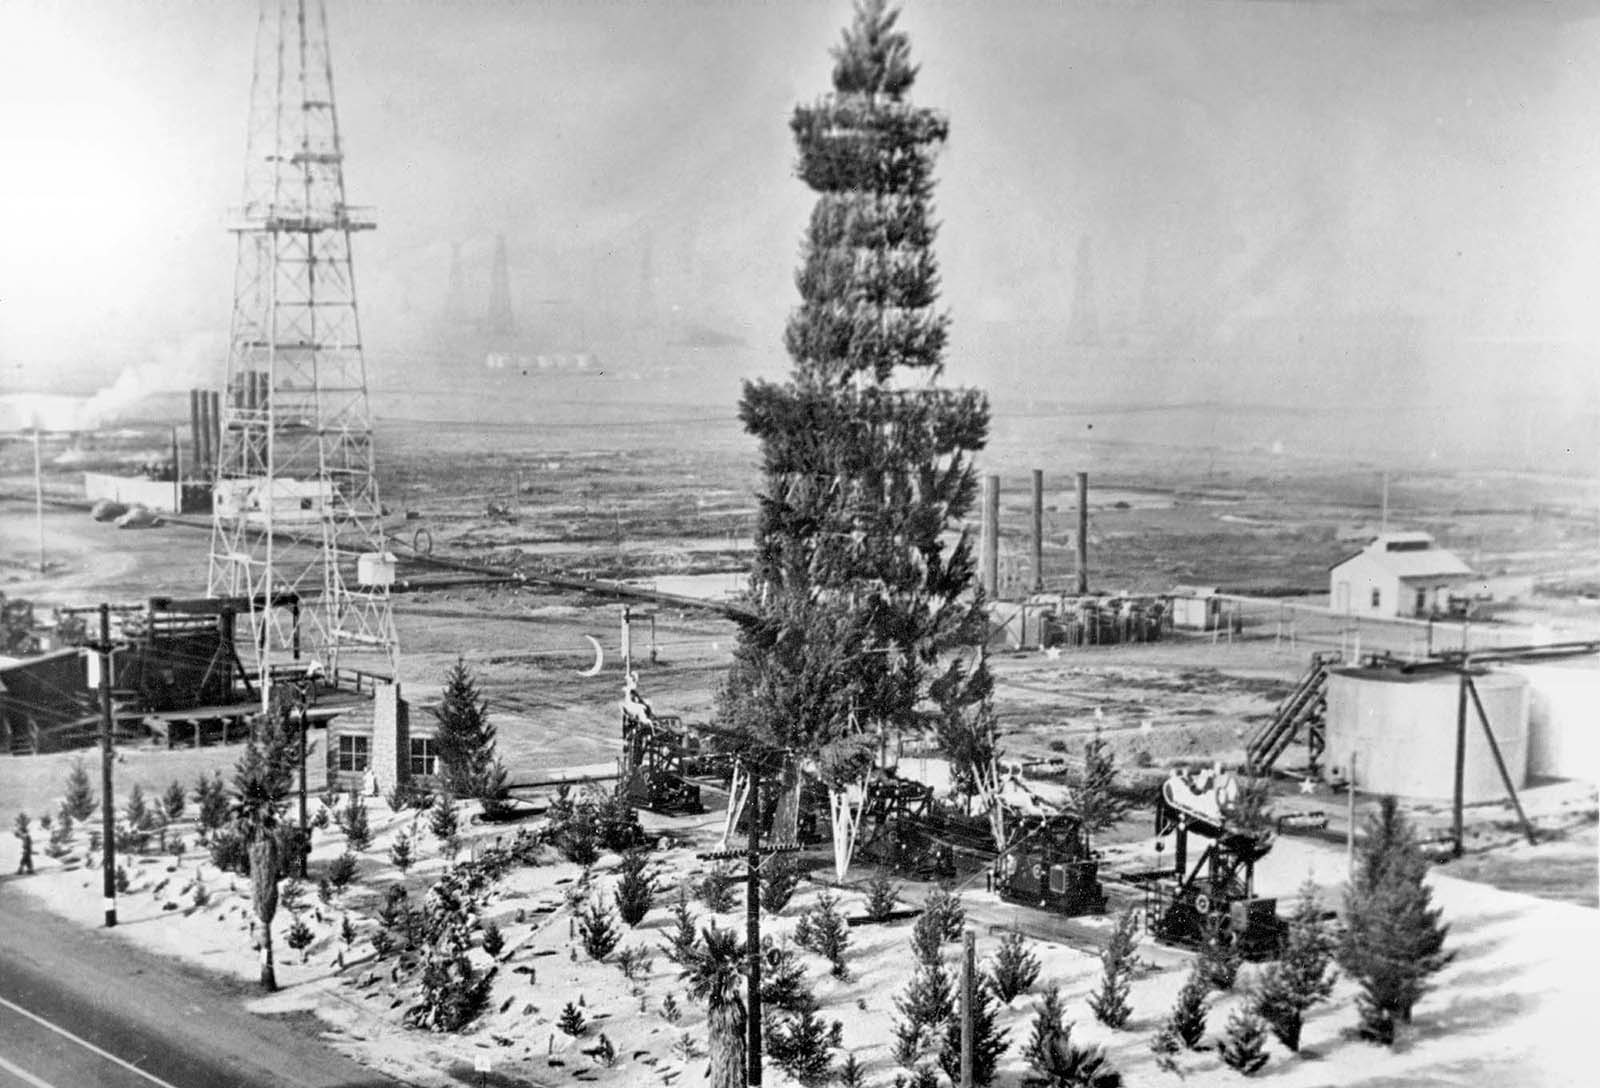 Oil derrick camouflaged as Christmas tree, Huntington Beach, 1939.